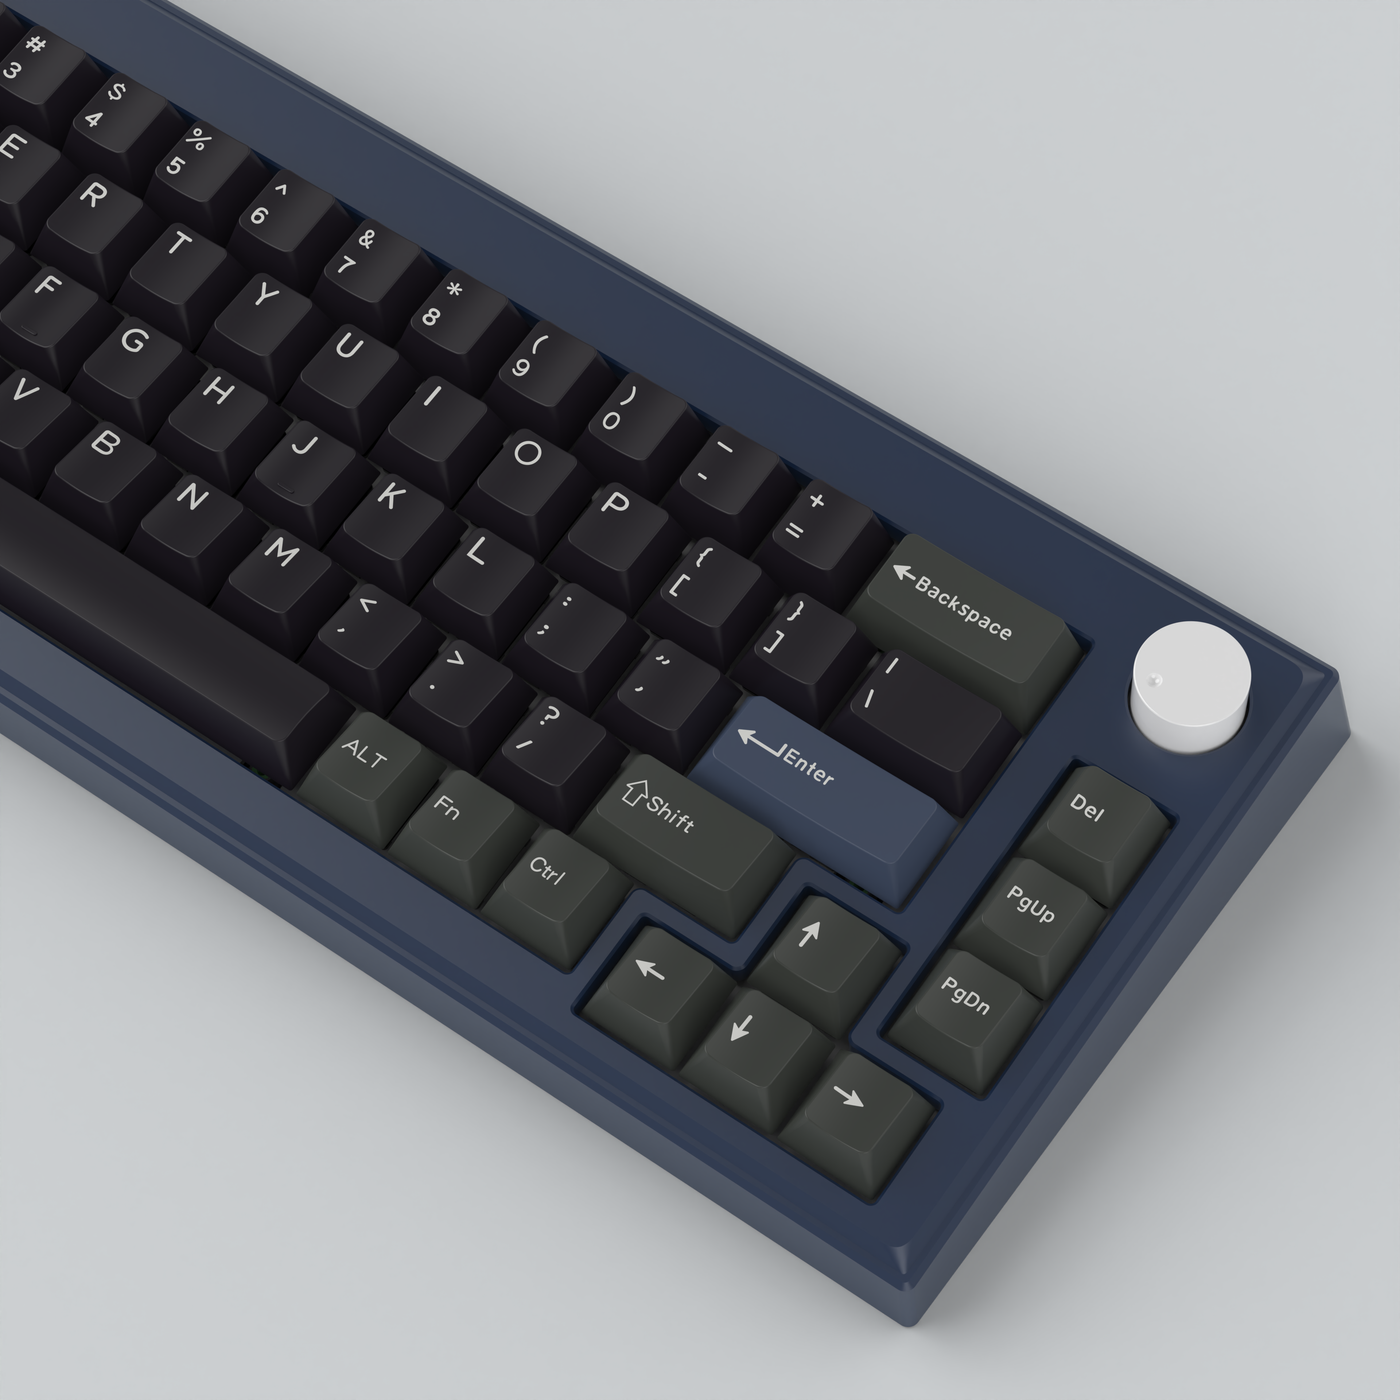 Finalkey Origin65 Aluminum Keyboard Kit